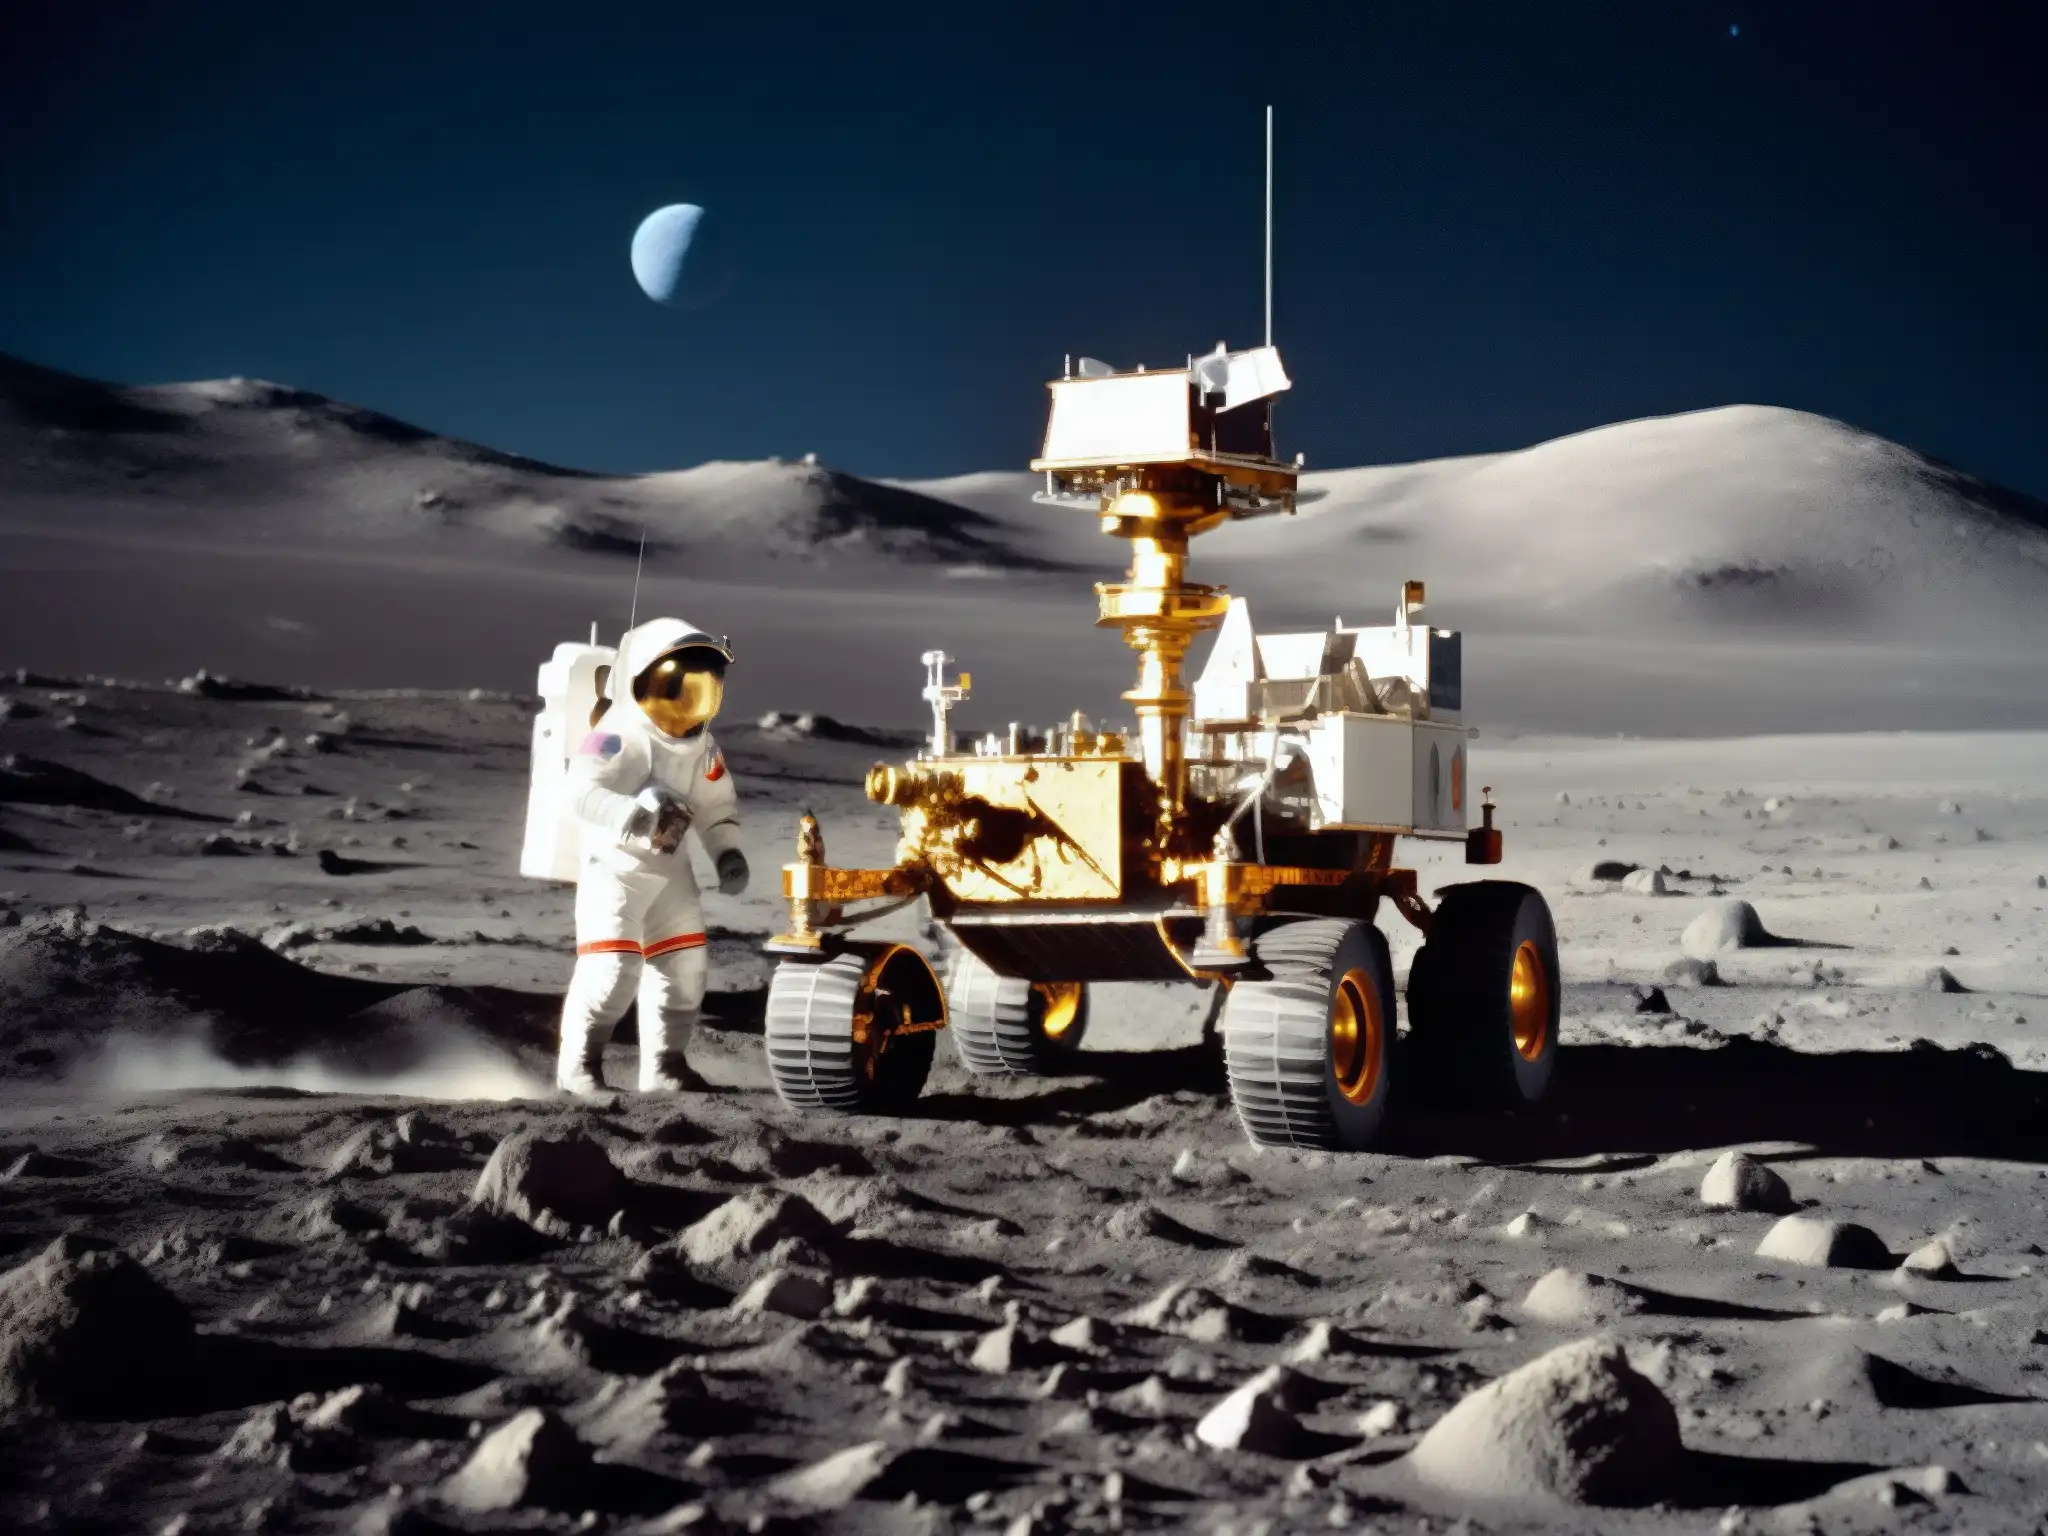 Un rover lunar atraviesa el terreno rocoso, con la Tierra de fondo y un astronauta realizando experimentos